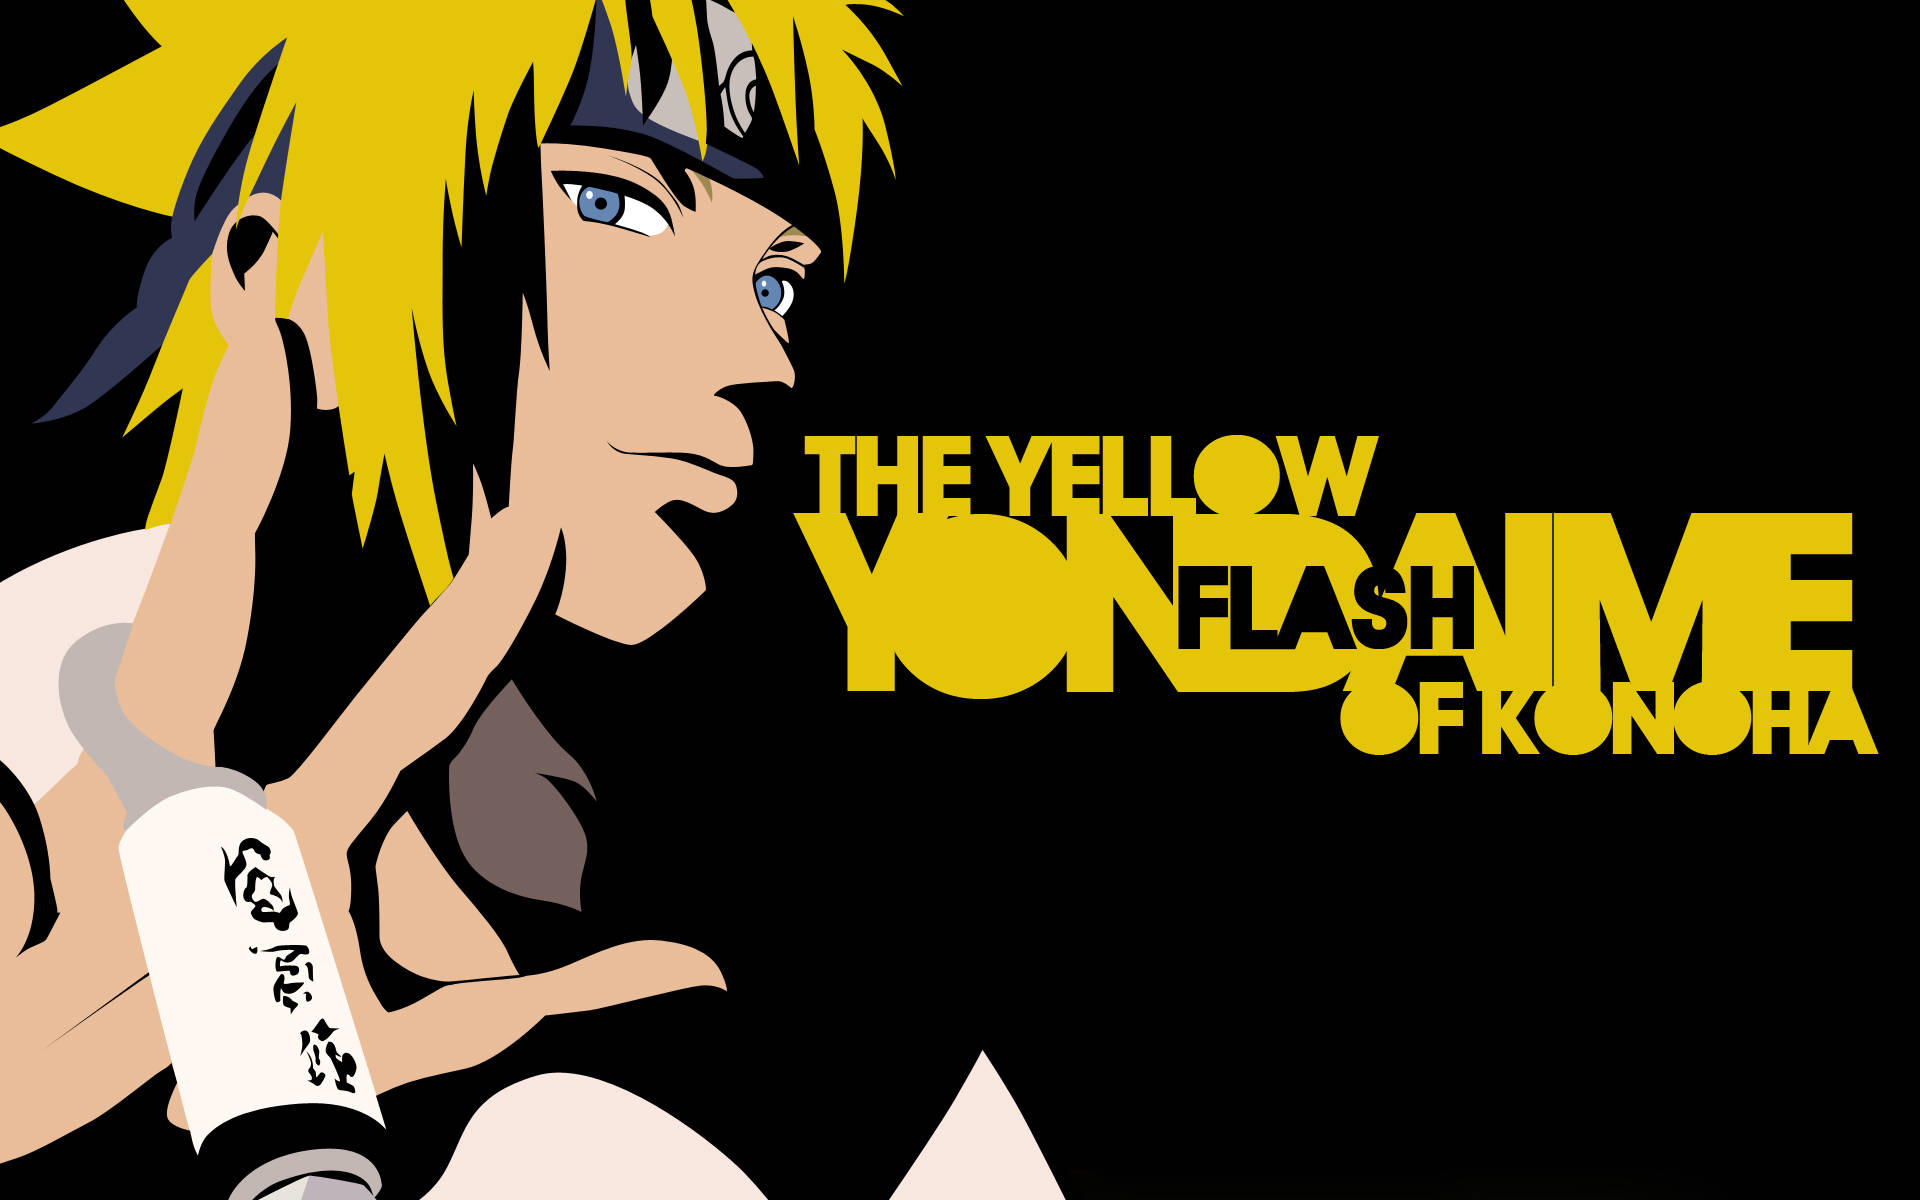 Yellow Naruto The Flash Of Konoha Wallpaper